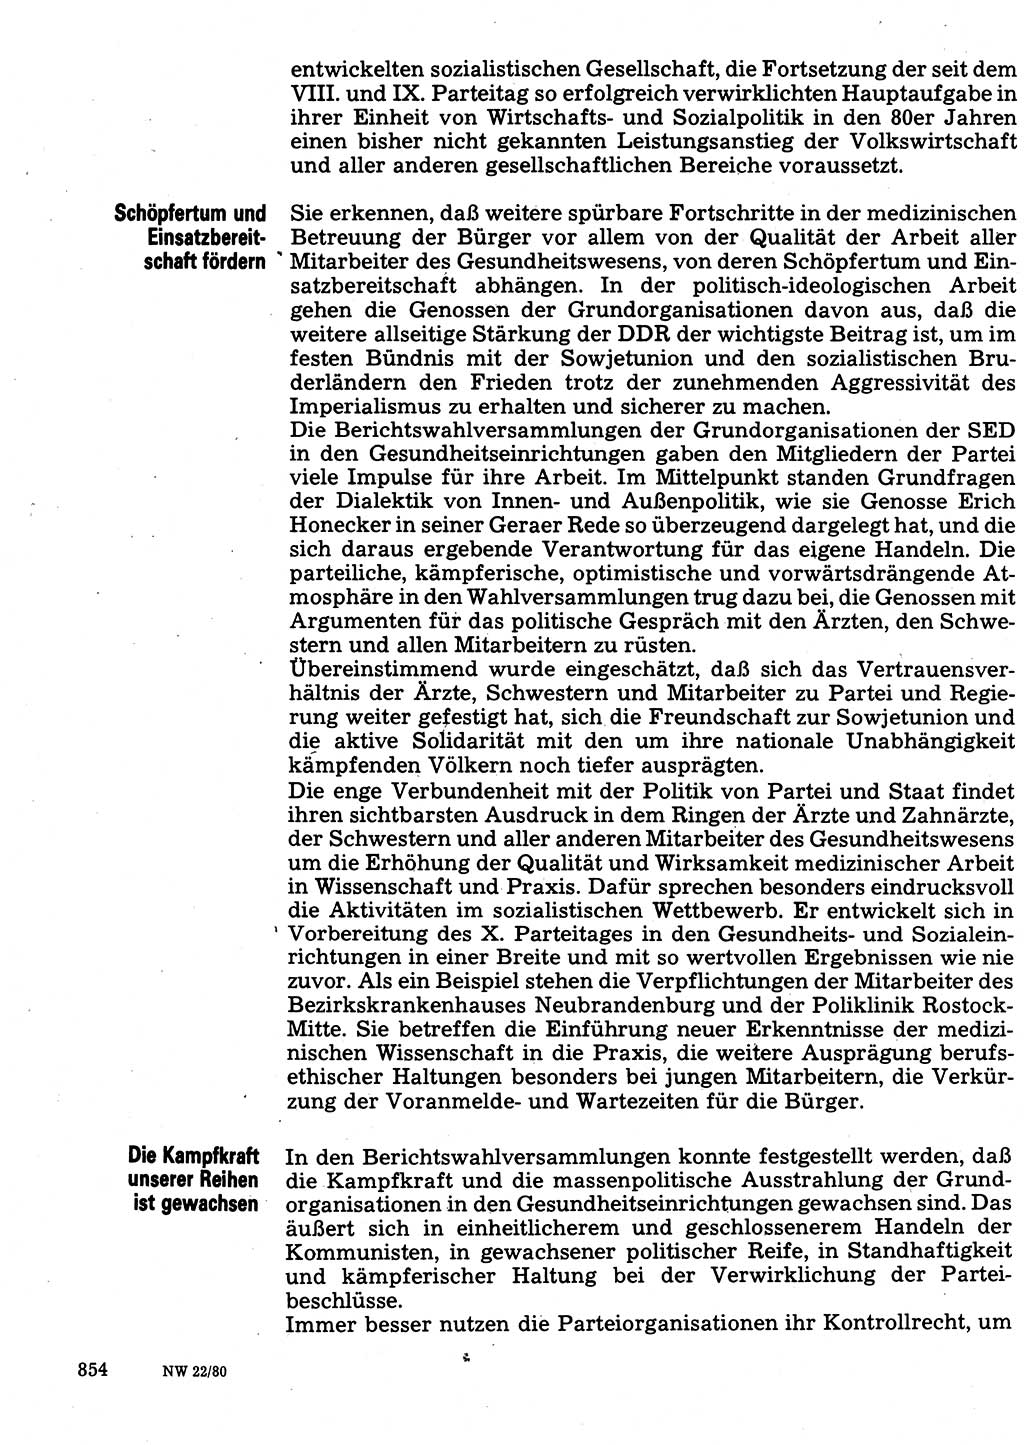 Neuer Weg (NW), Organ des Zentralkomitees (ZK) der SED (Sozialistische Einheitspartei Deutschlands) für Fragen des Parteilebens, 35. Jahrgang [Deutsche Demokratische Republik (DDR)] 1980, Seite 854 (NW ZK SED DDR 1980, S. 854)